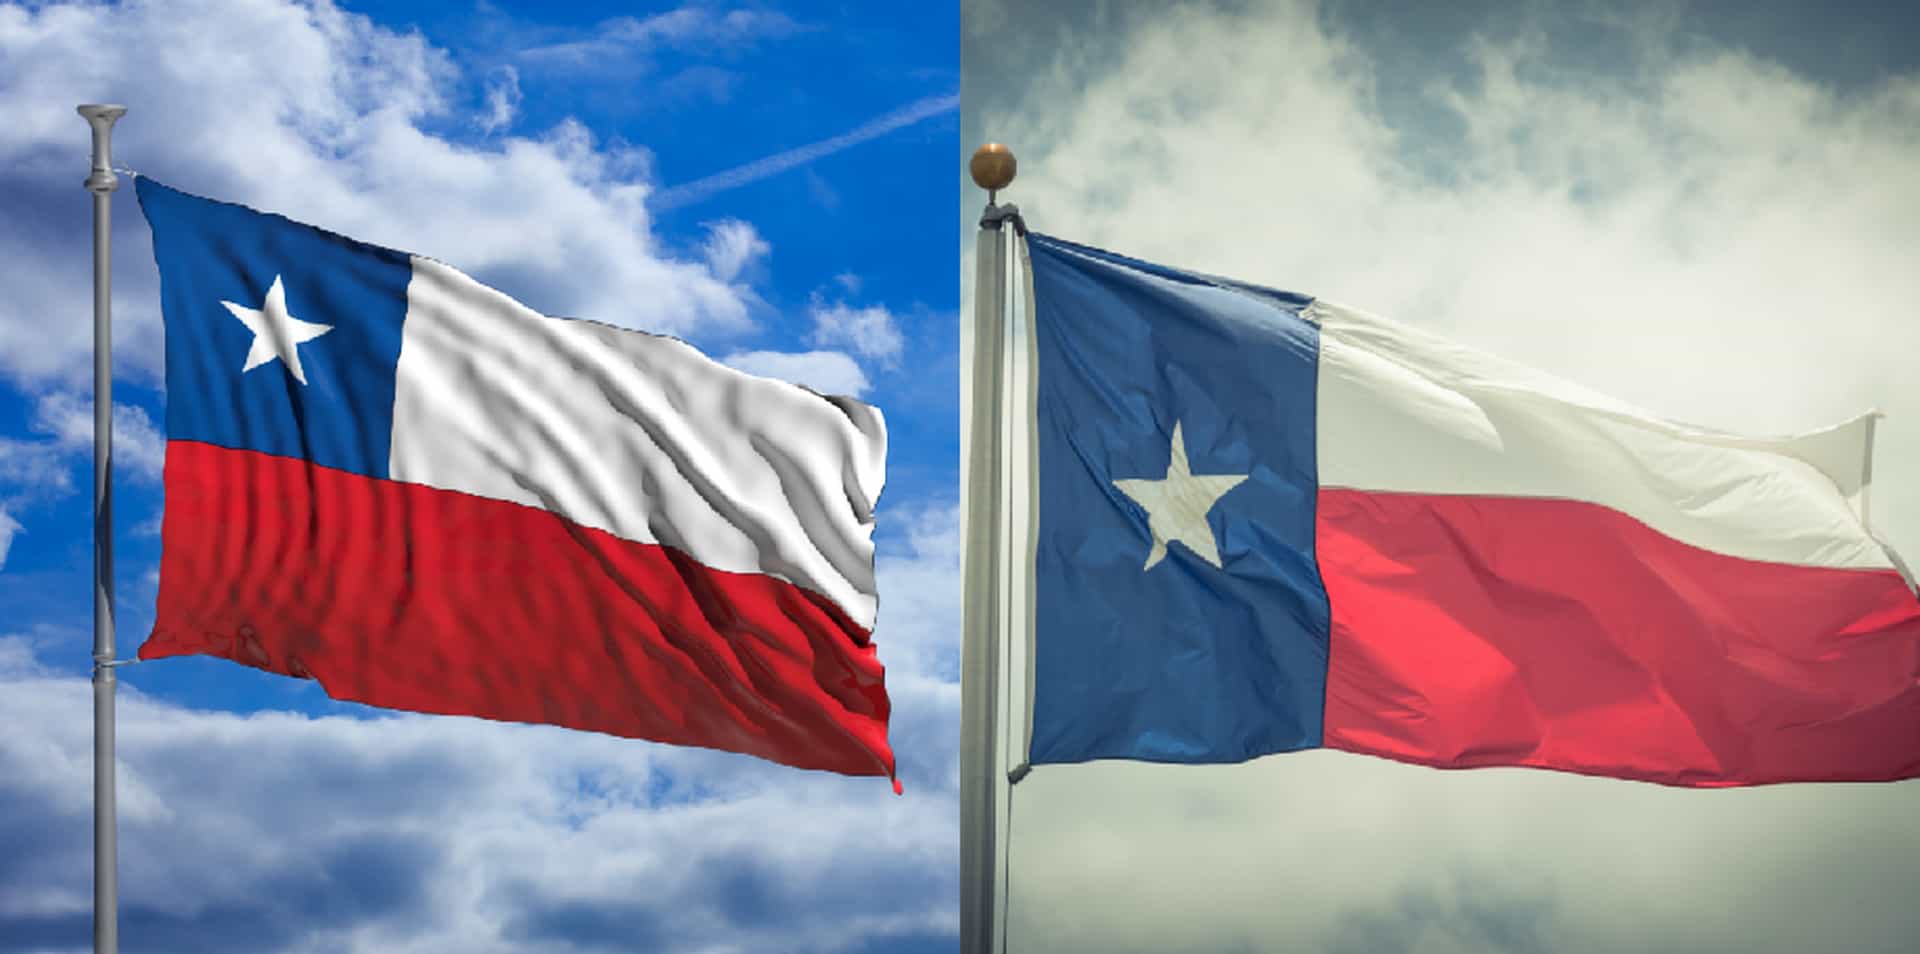 Le drapeau chilien (image de gauche) ressemble beaucoup au drapeau de l'état américain du Texas (image de droite).